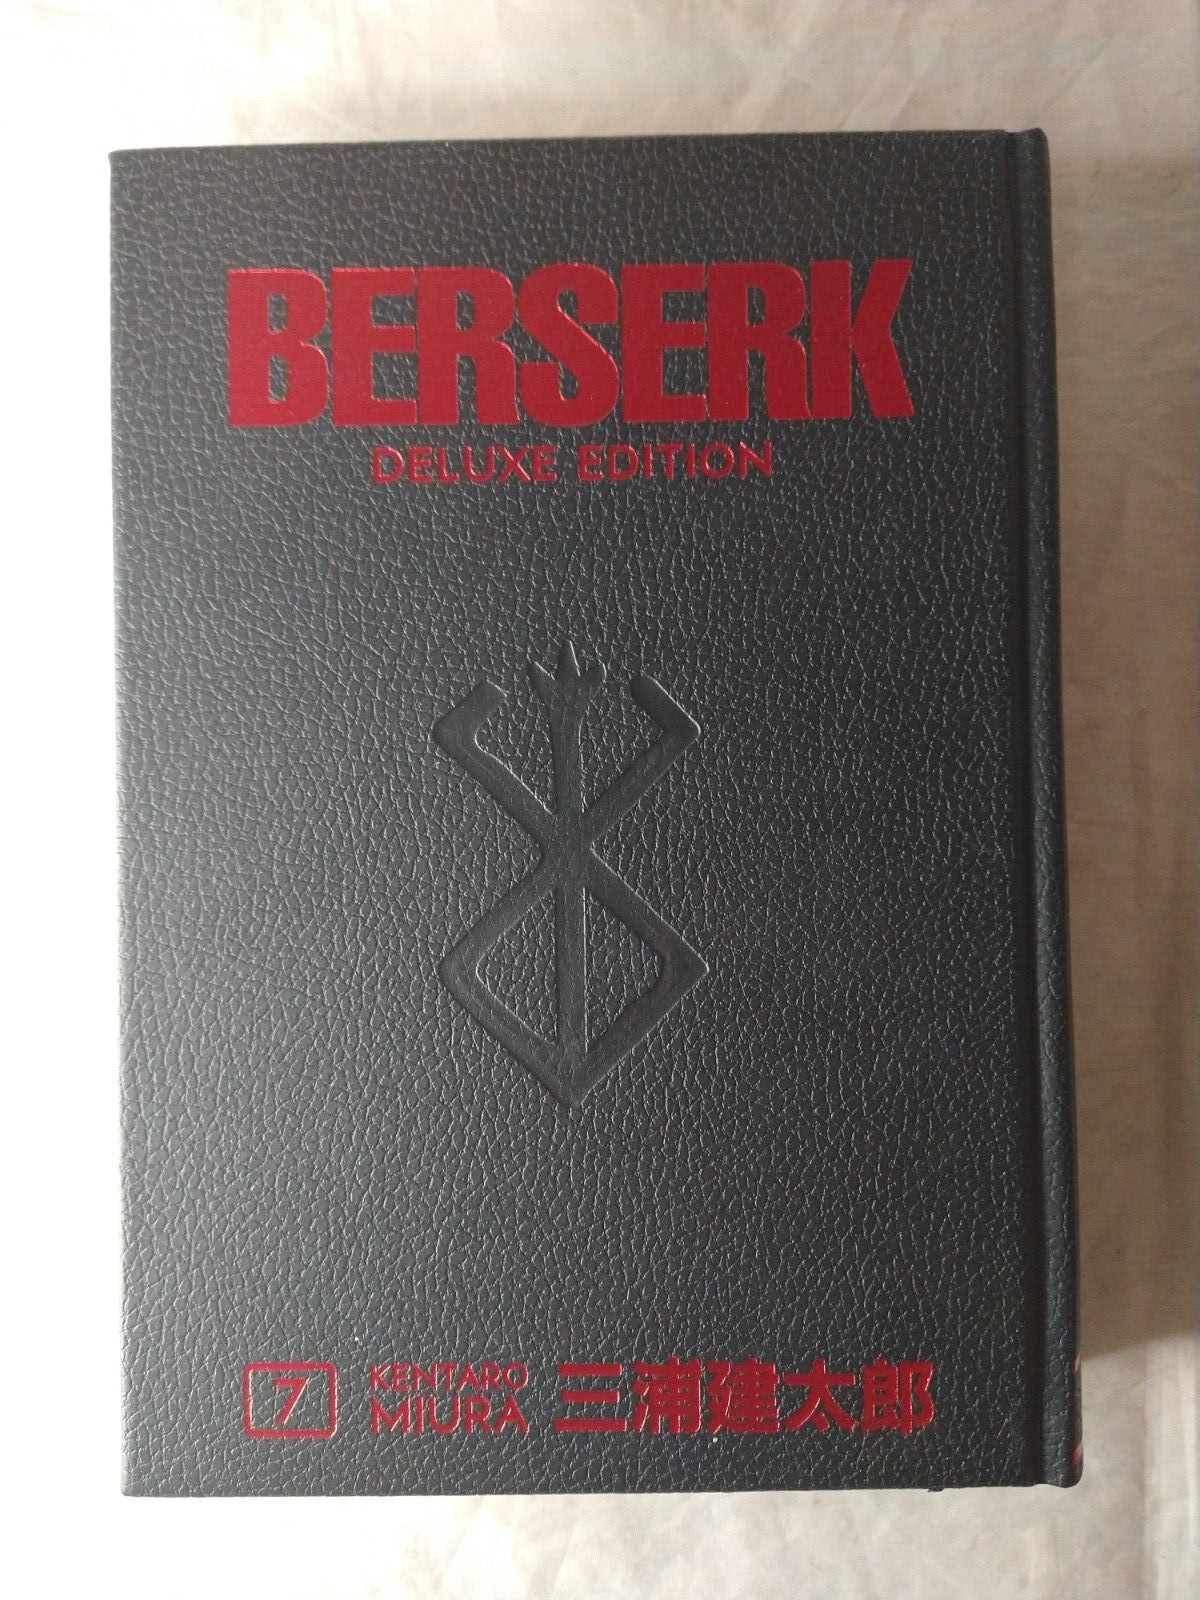 Berserk Deluxe Volume 7 Hardcover Kentaro Miura Dark Horse Comics